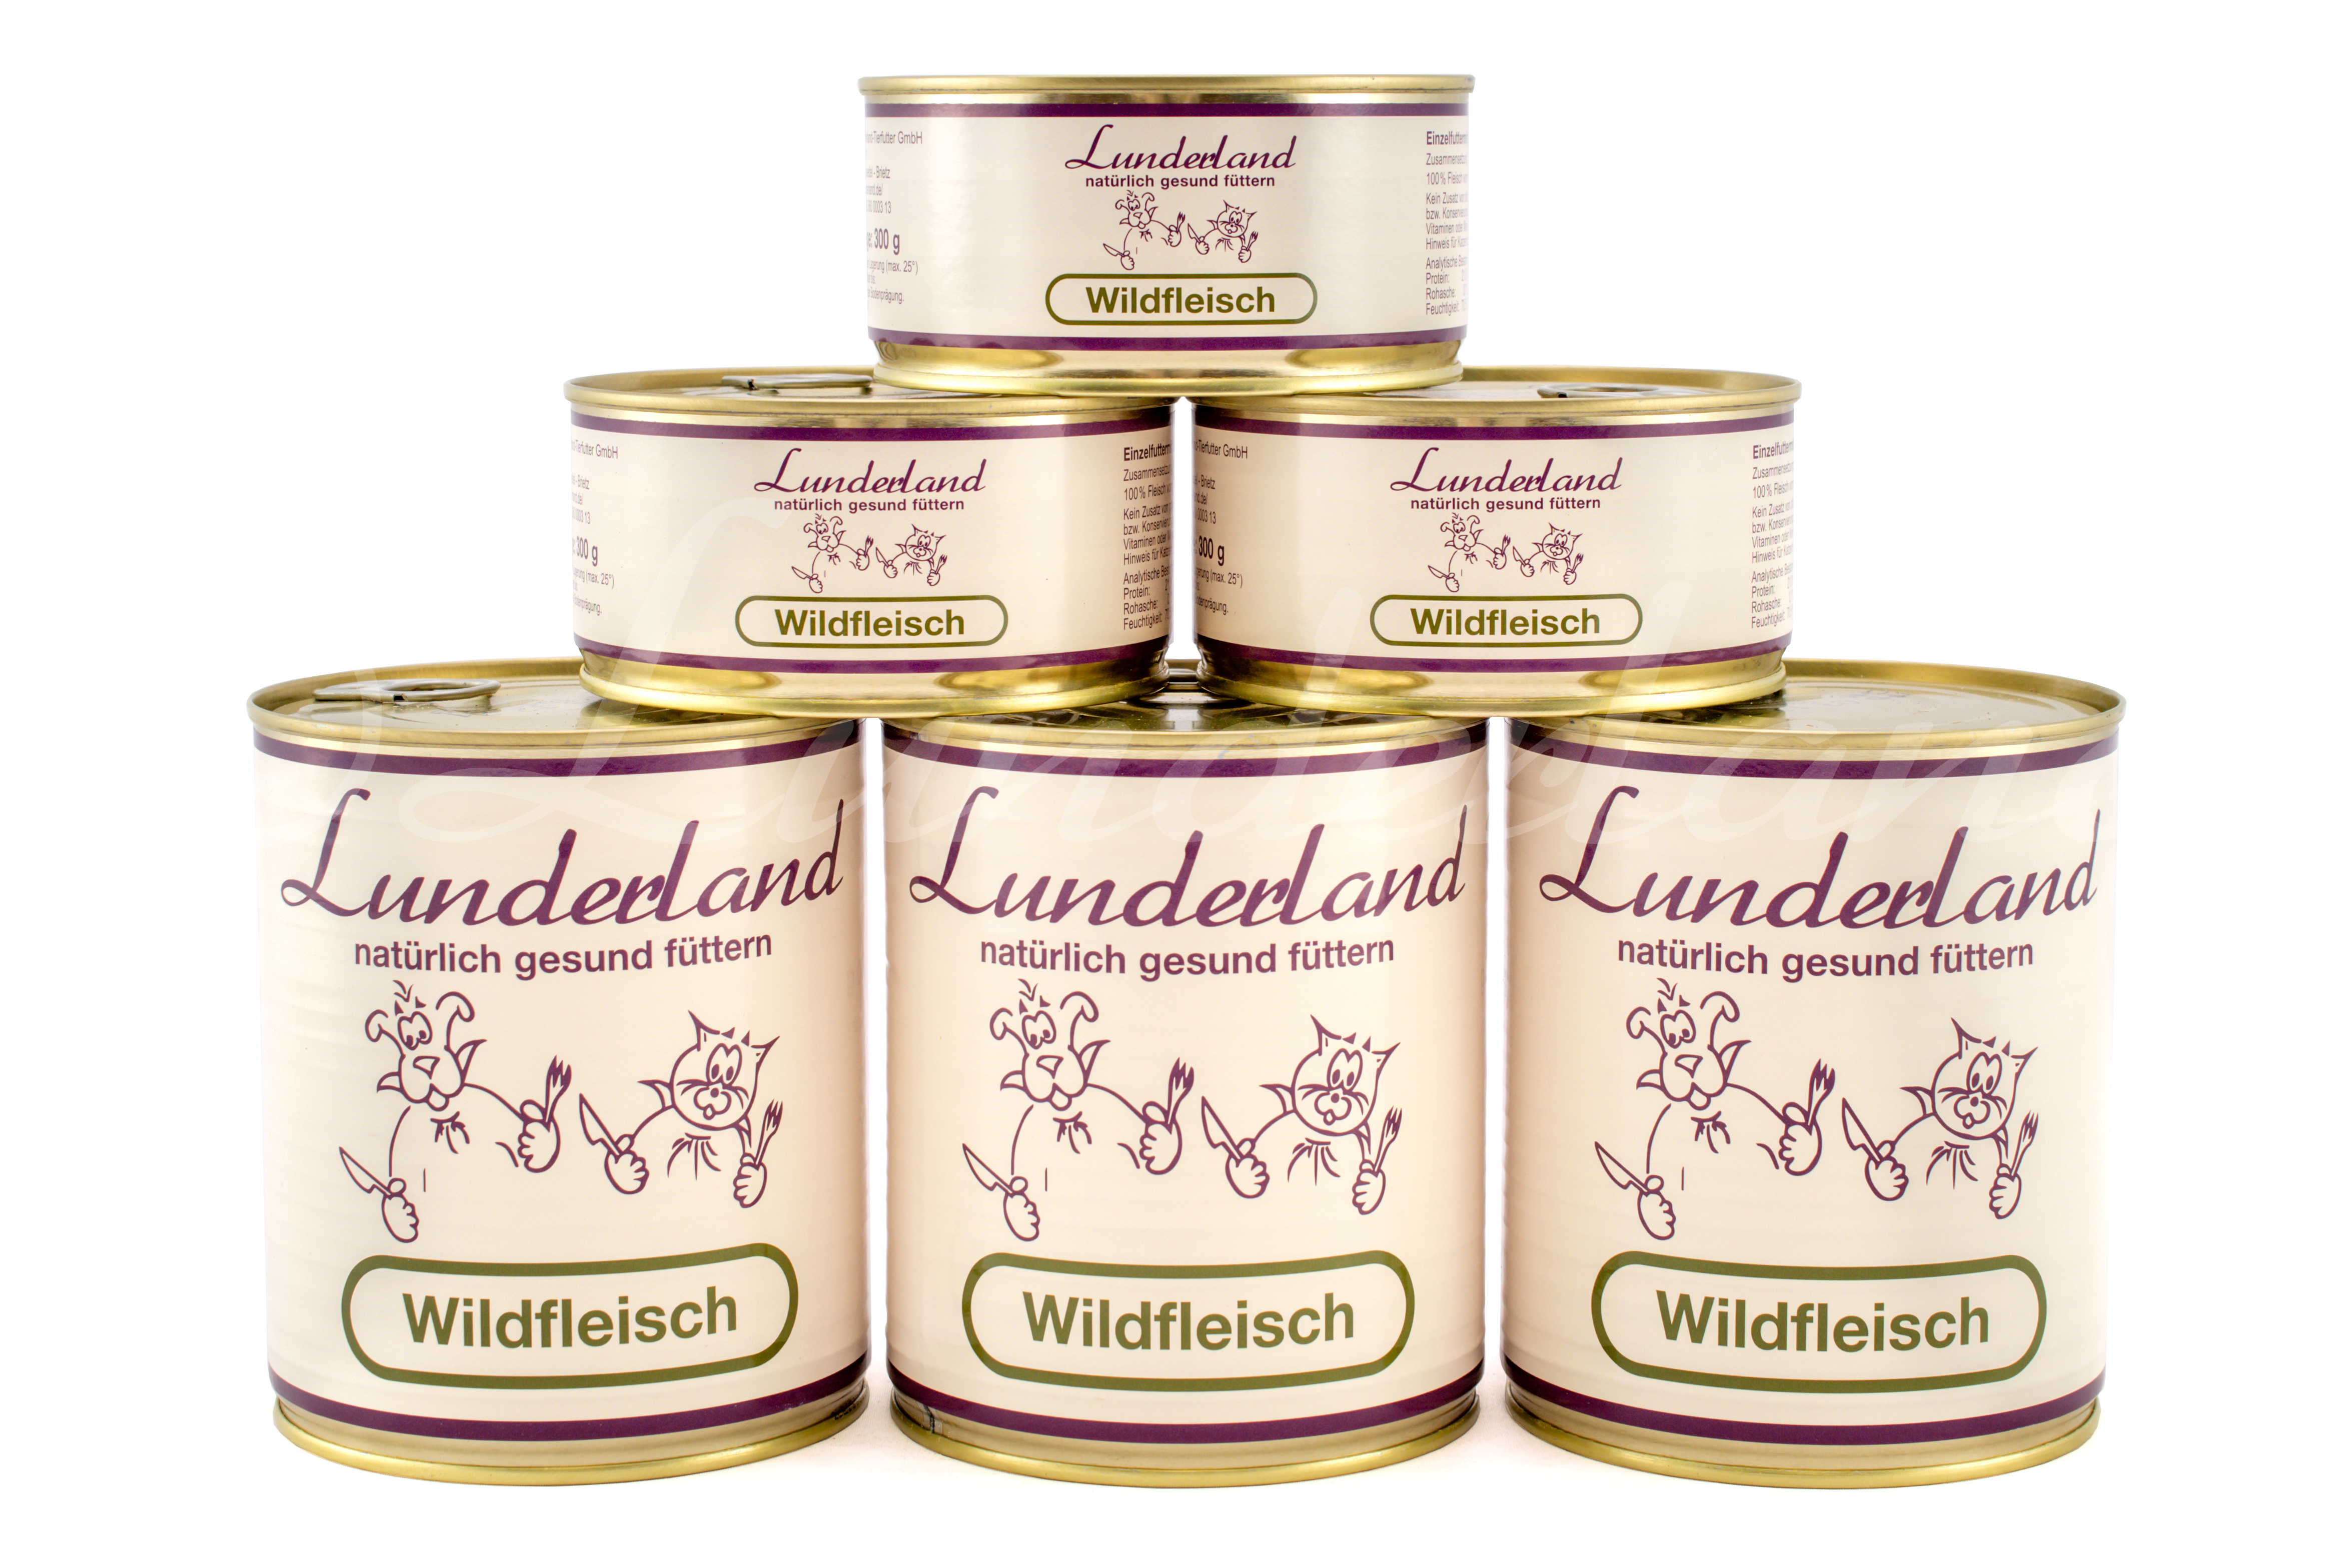 Lunderland-Dosenfleisch-Wildfleisch